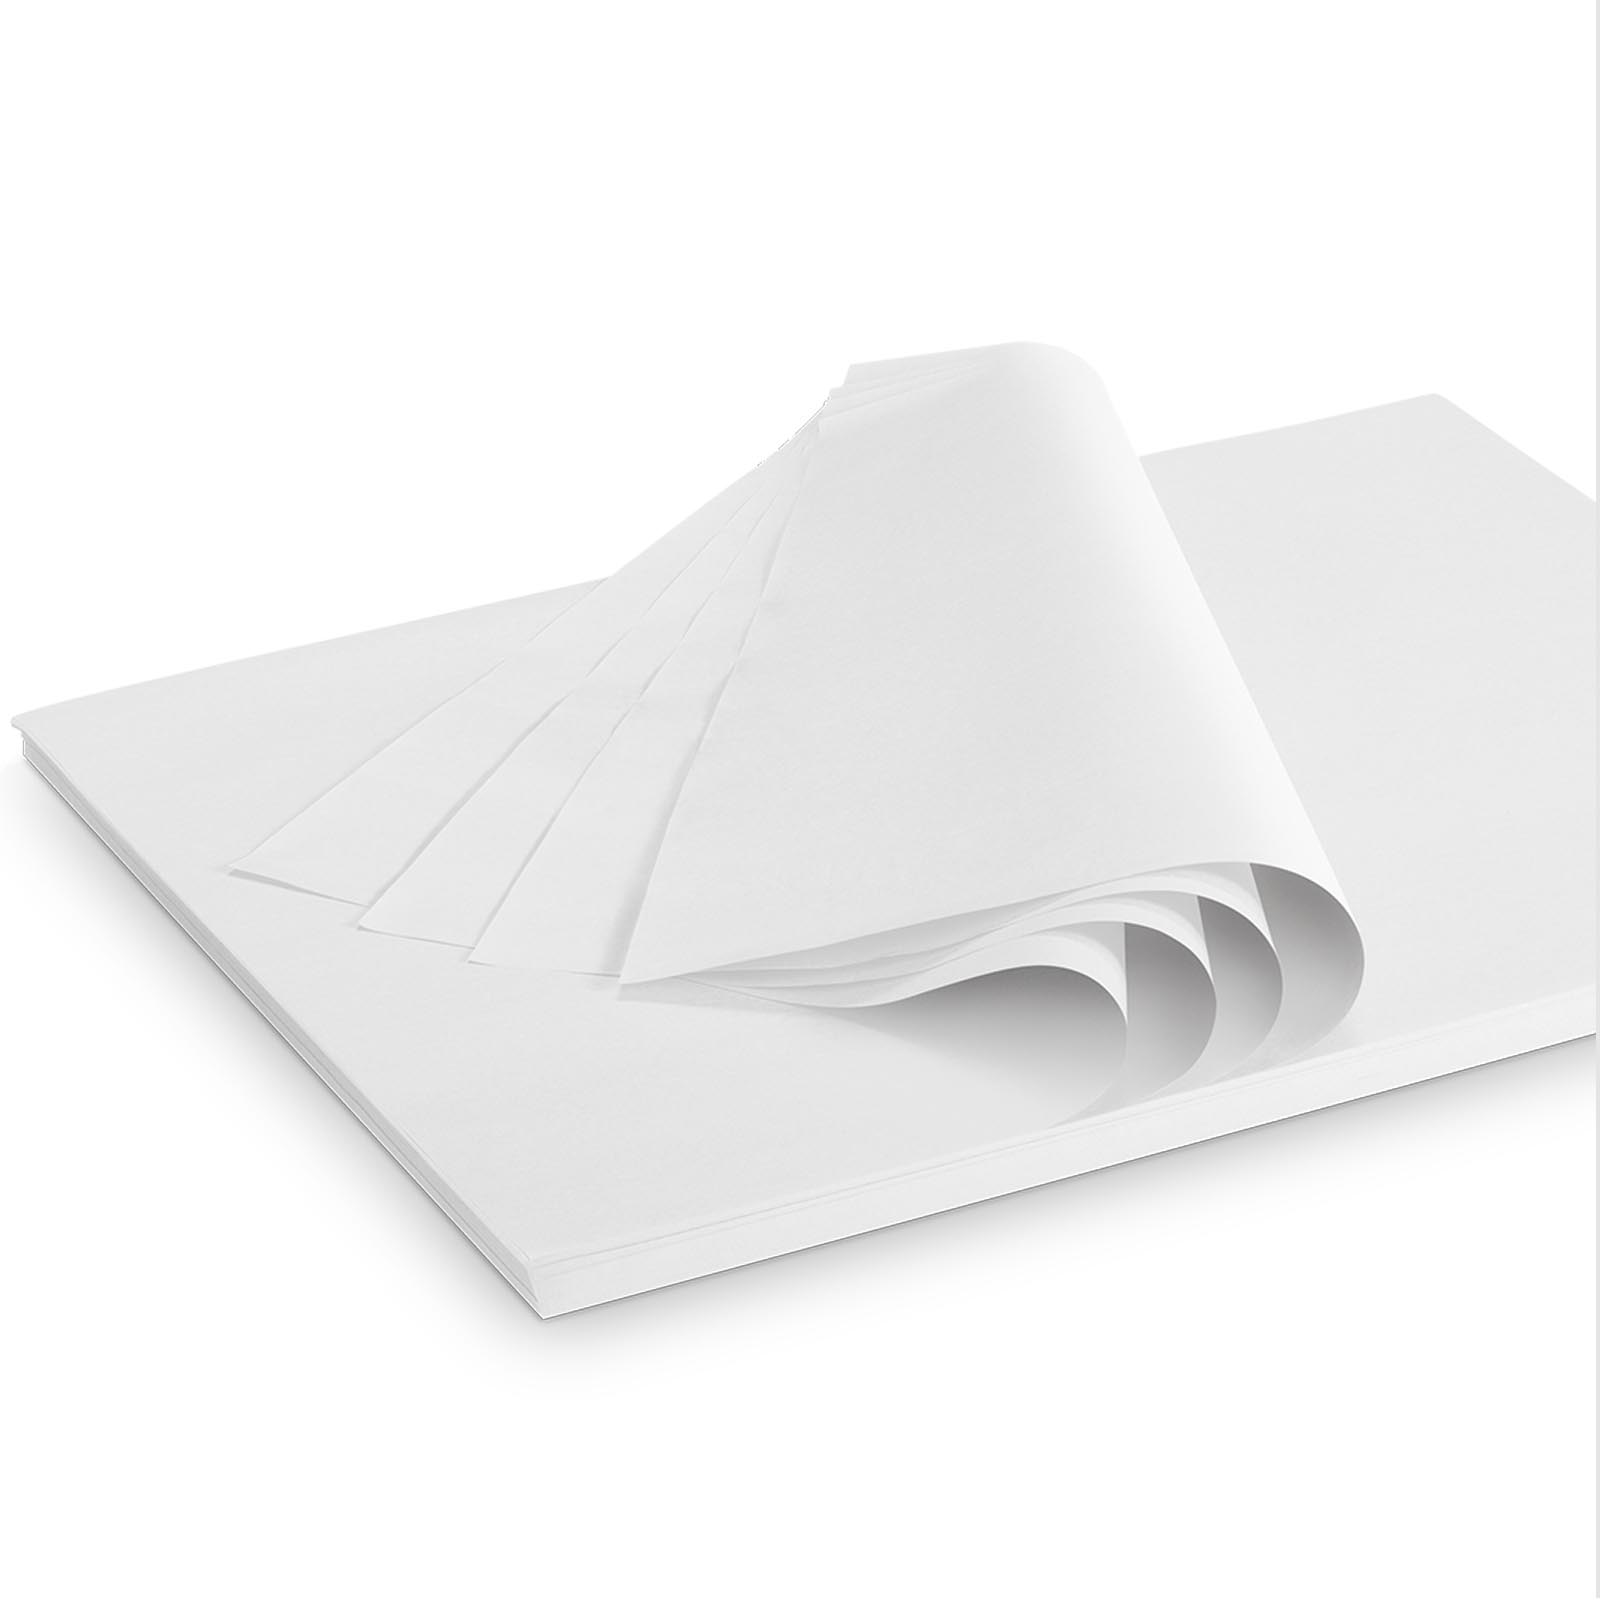 Seidenpapier 375x500mm weiß 28g/m²,380 Bogen/ Karton = 2kg